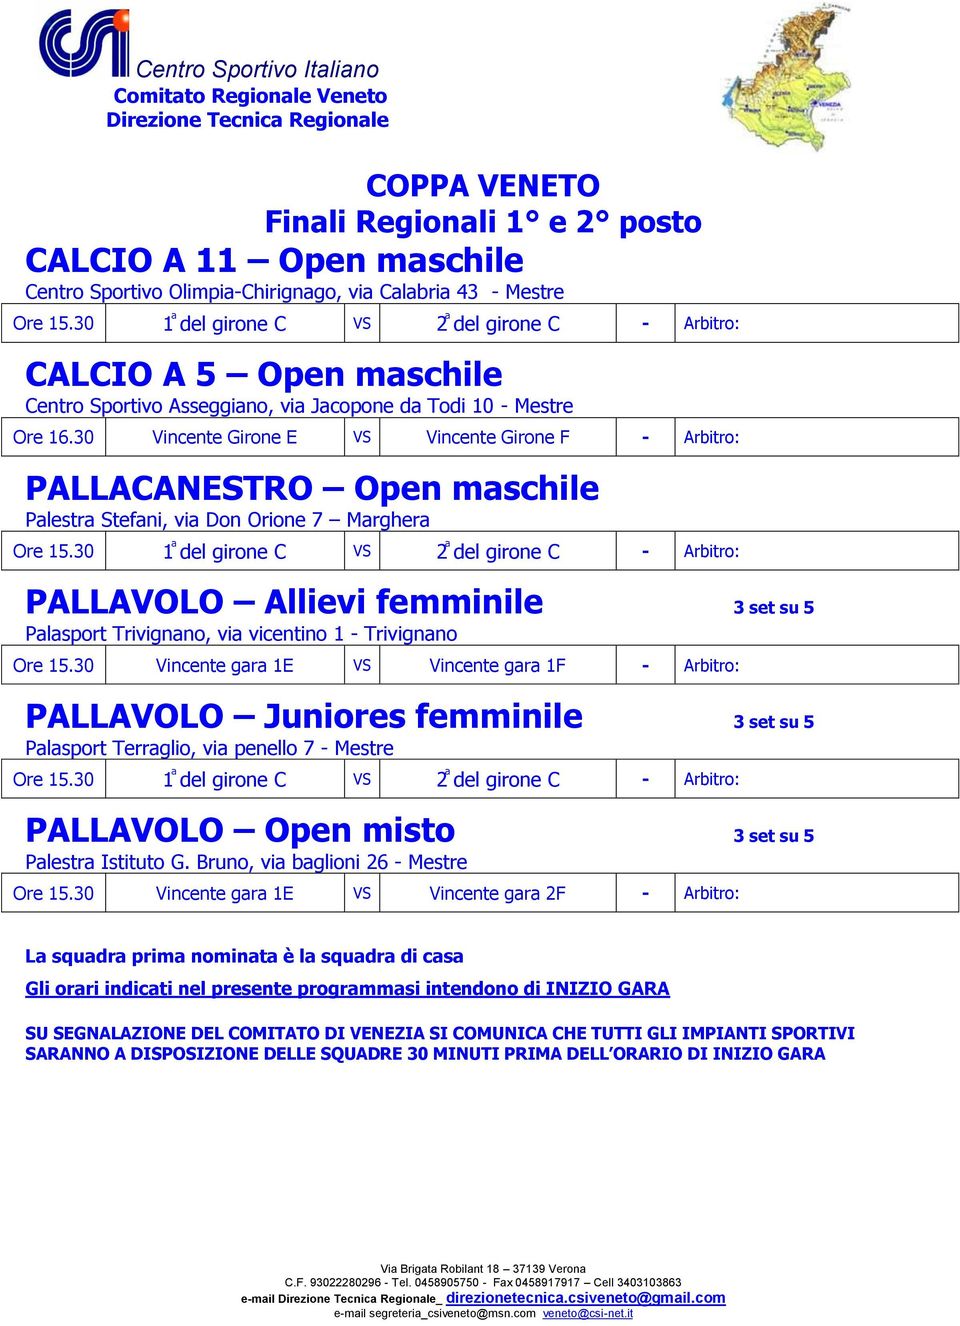 30 1 del girone C 2 del girone C PALLAVOLO Allievi femminile 3 set su 5 Palasport Trivignano, via vicentino 1 - Trivignano Ore 15.